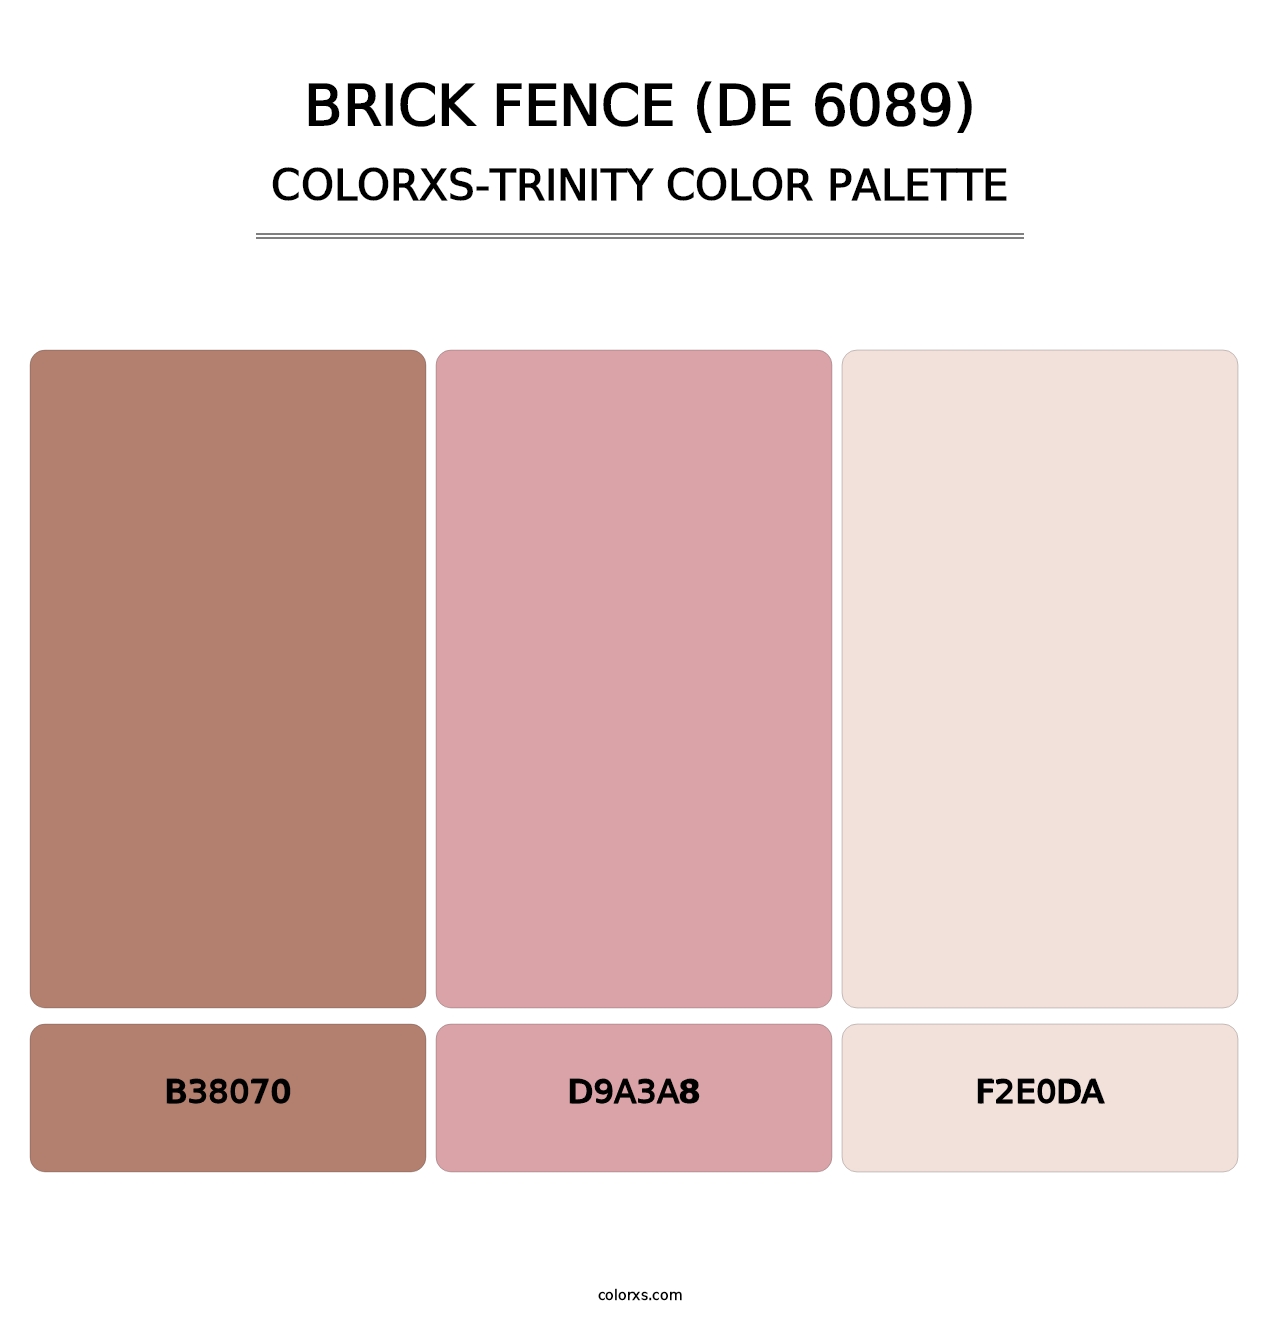 Brick Fence (DE 6089) - Colorxs Trinity Palette